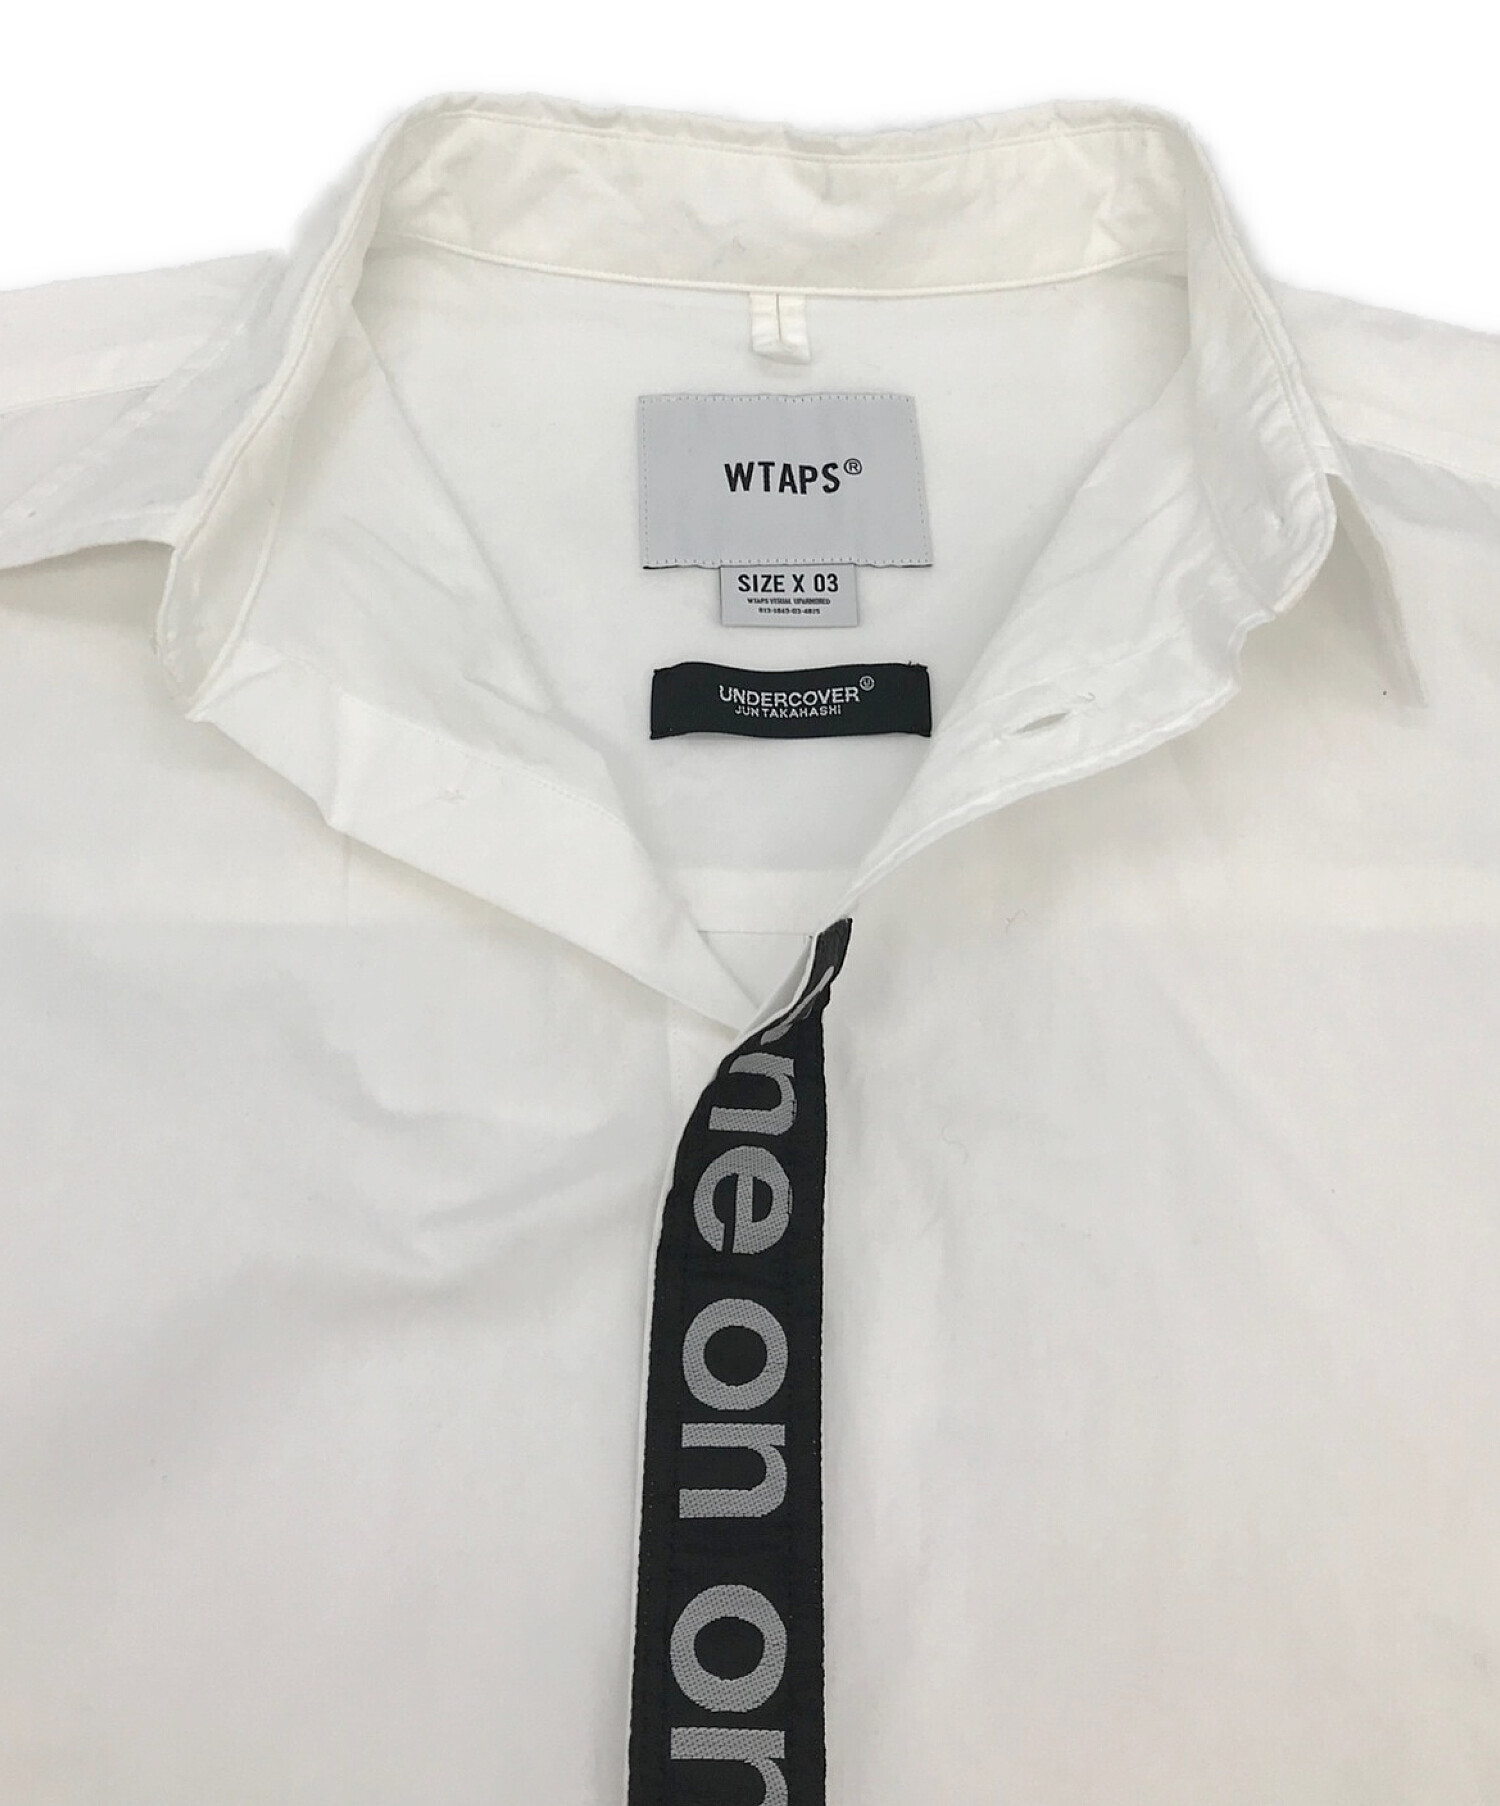 新品 undercover × wtaps oneonone Tシャツ サイズL